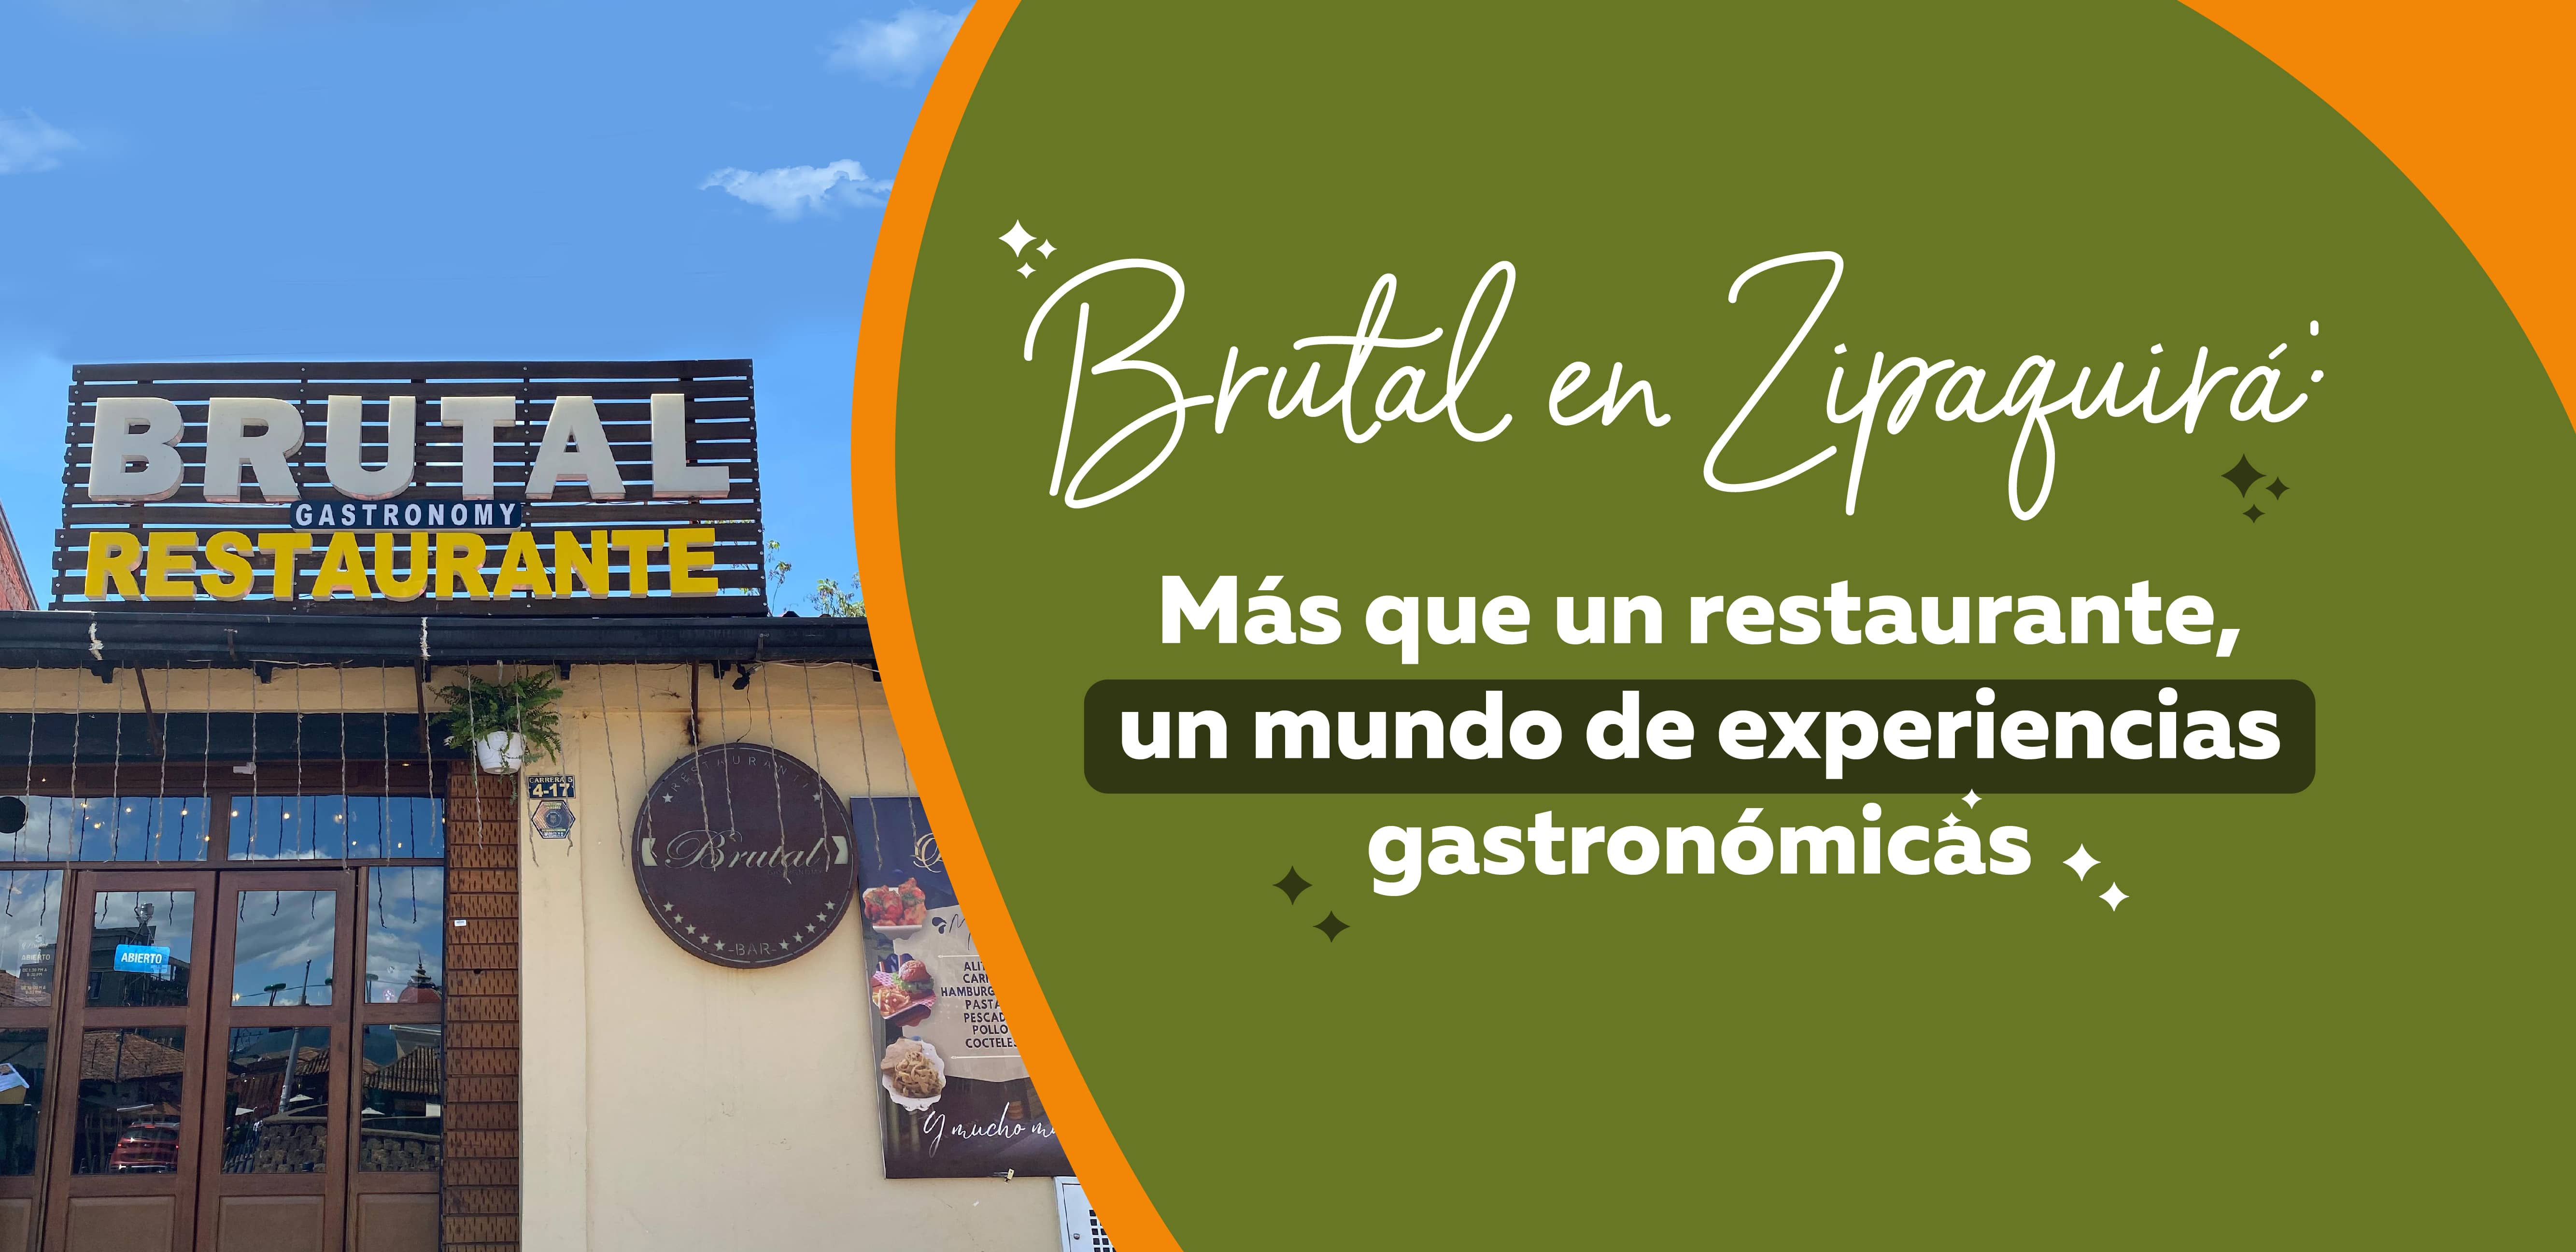 Brutal en Zipaquirá: Más que un restaurante, un mundo de experiencias gastronómicas